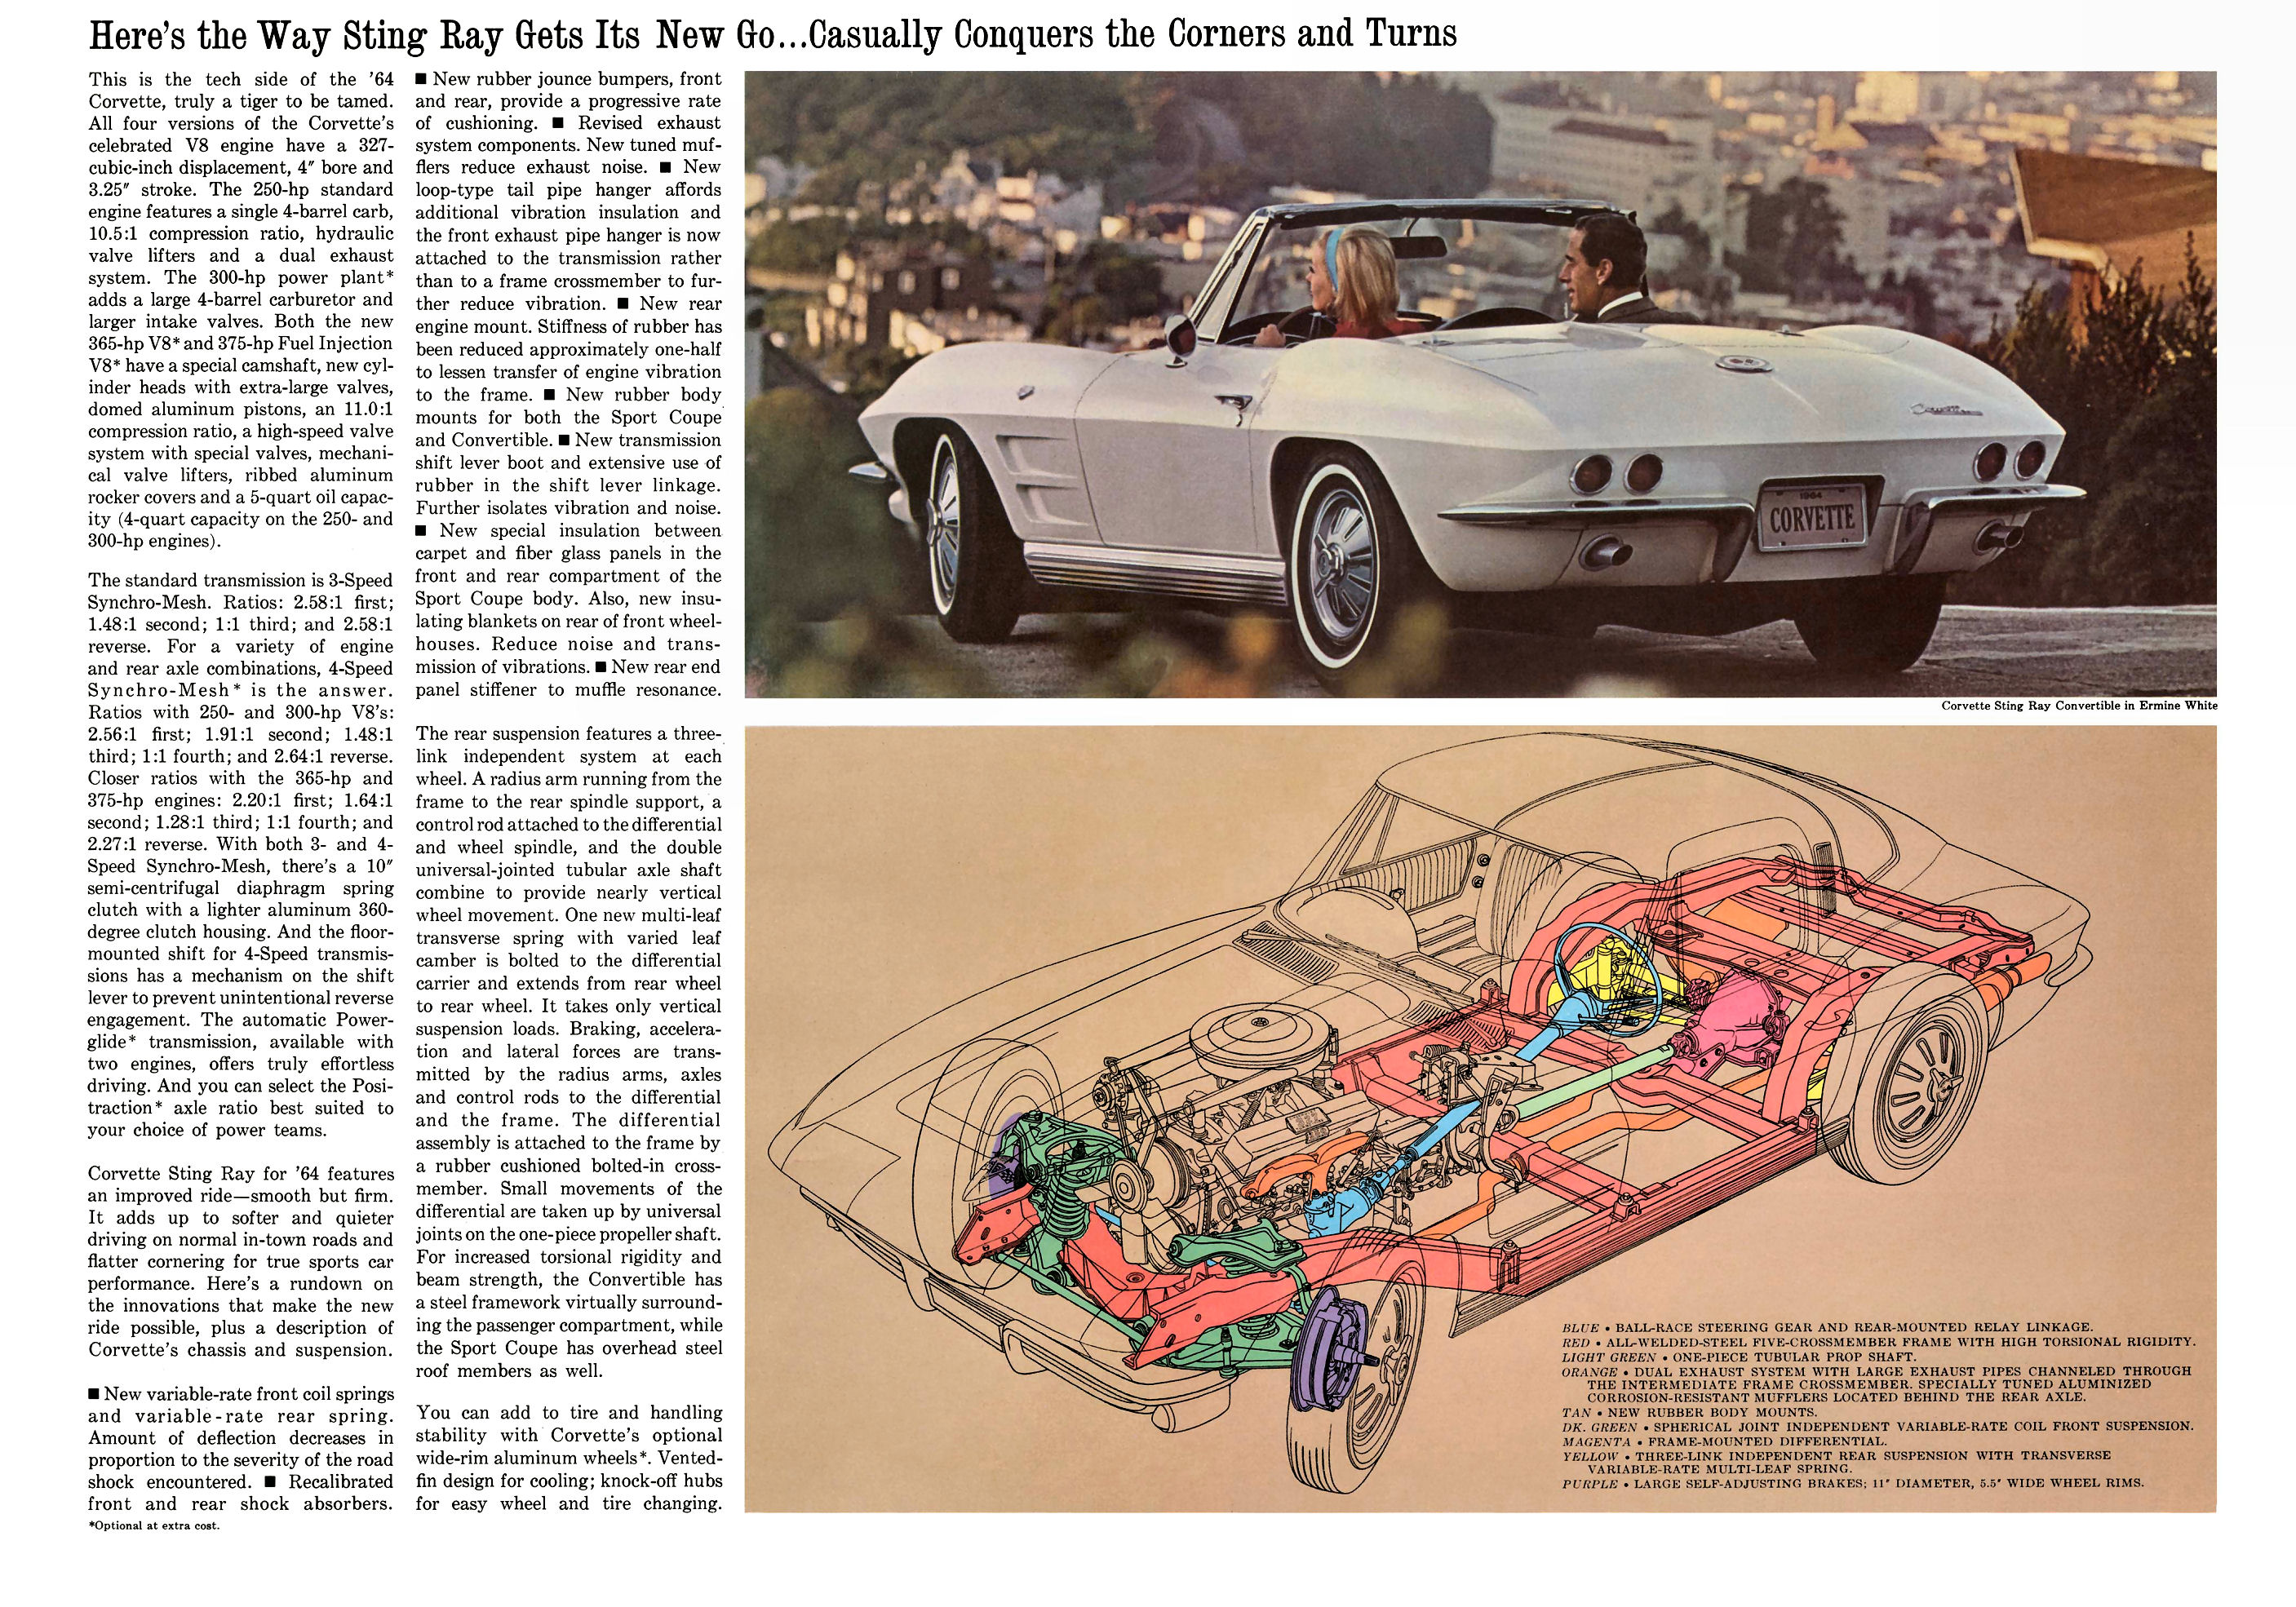 1964_Chevrolet_Corvette-06-07